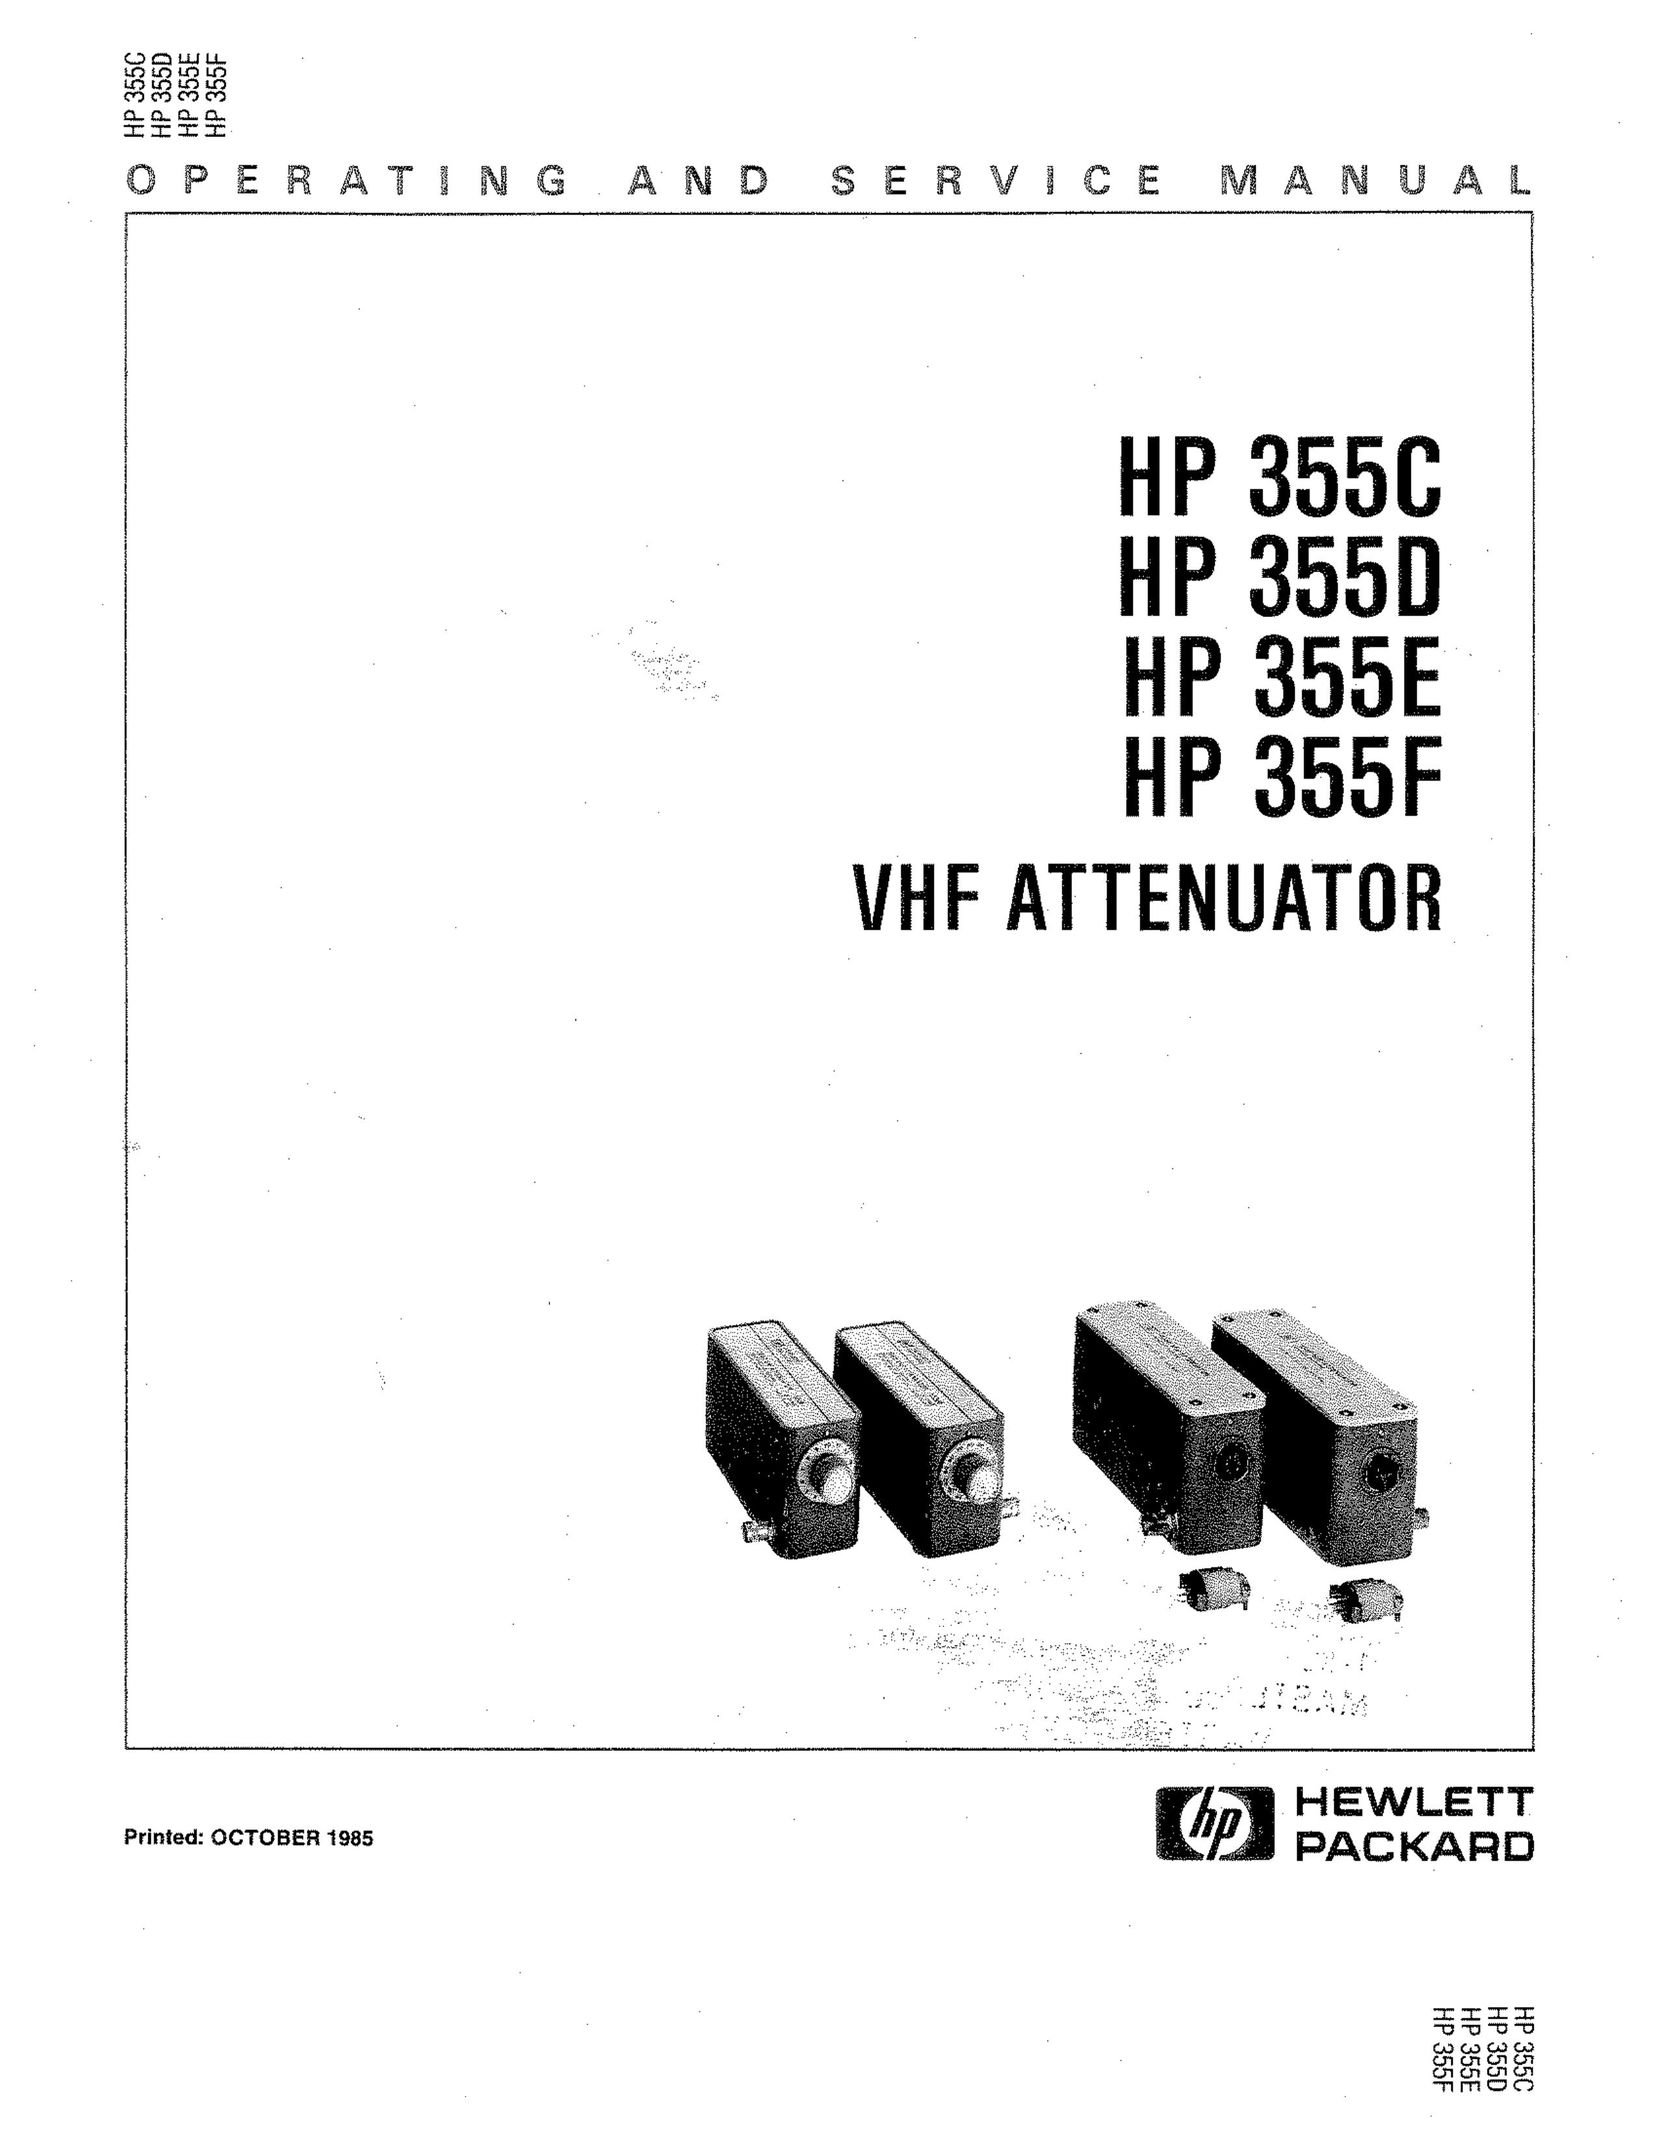 HP (Hewlett-Packard) HP 355F TV Antenna User Manual